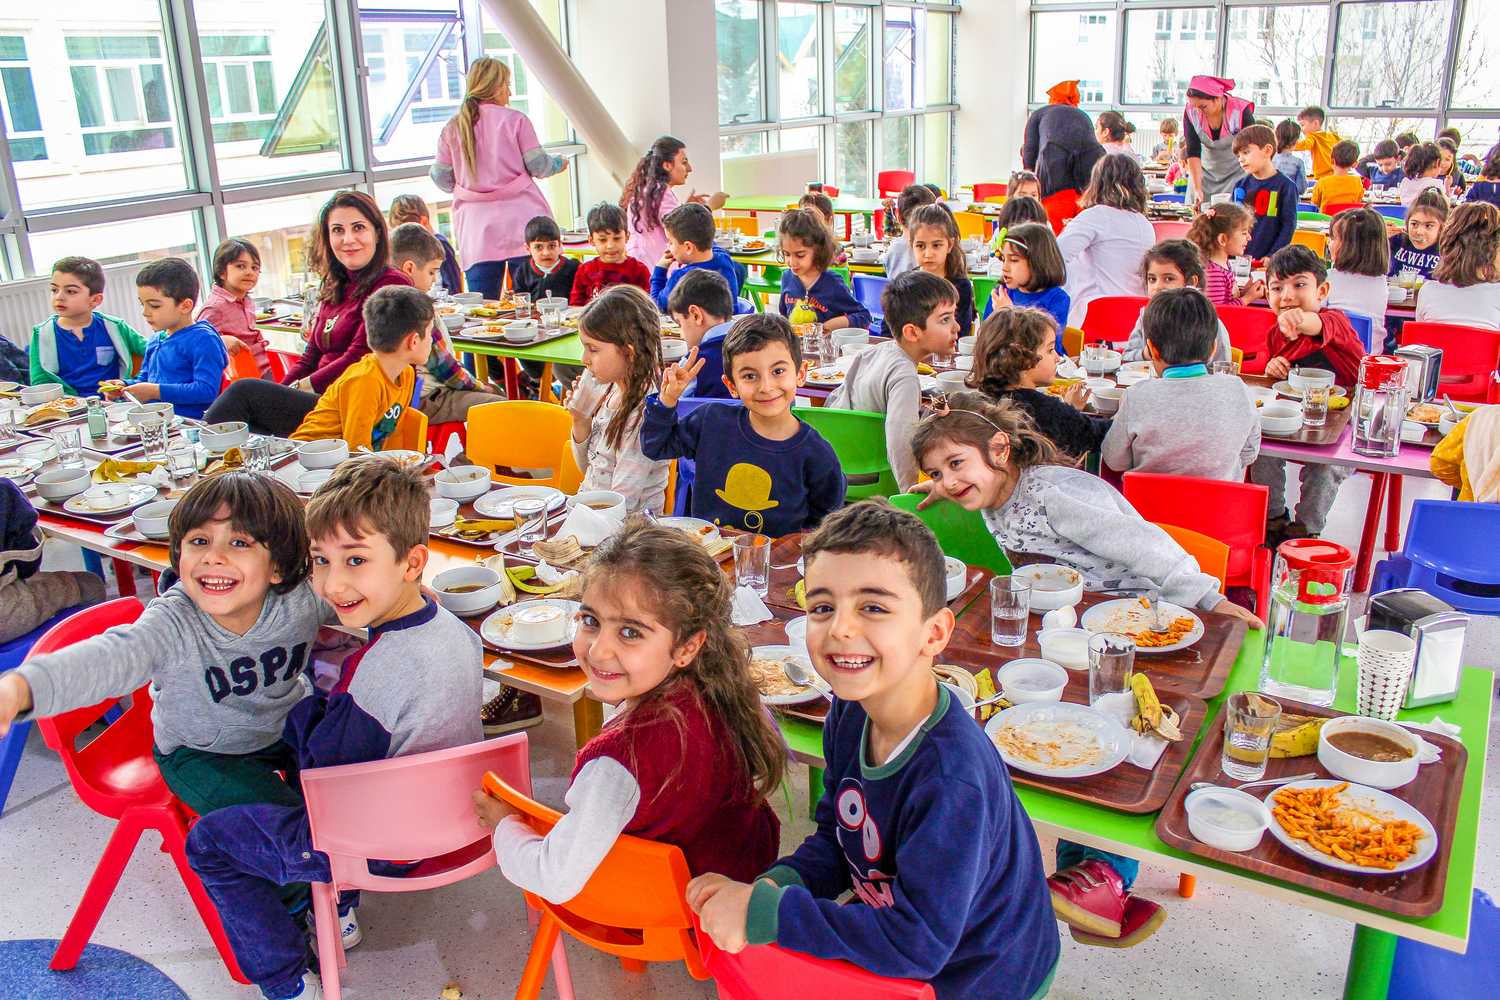 Обед для дошколенка: как организовано детское питание в разных странах 8